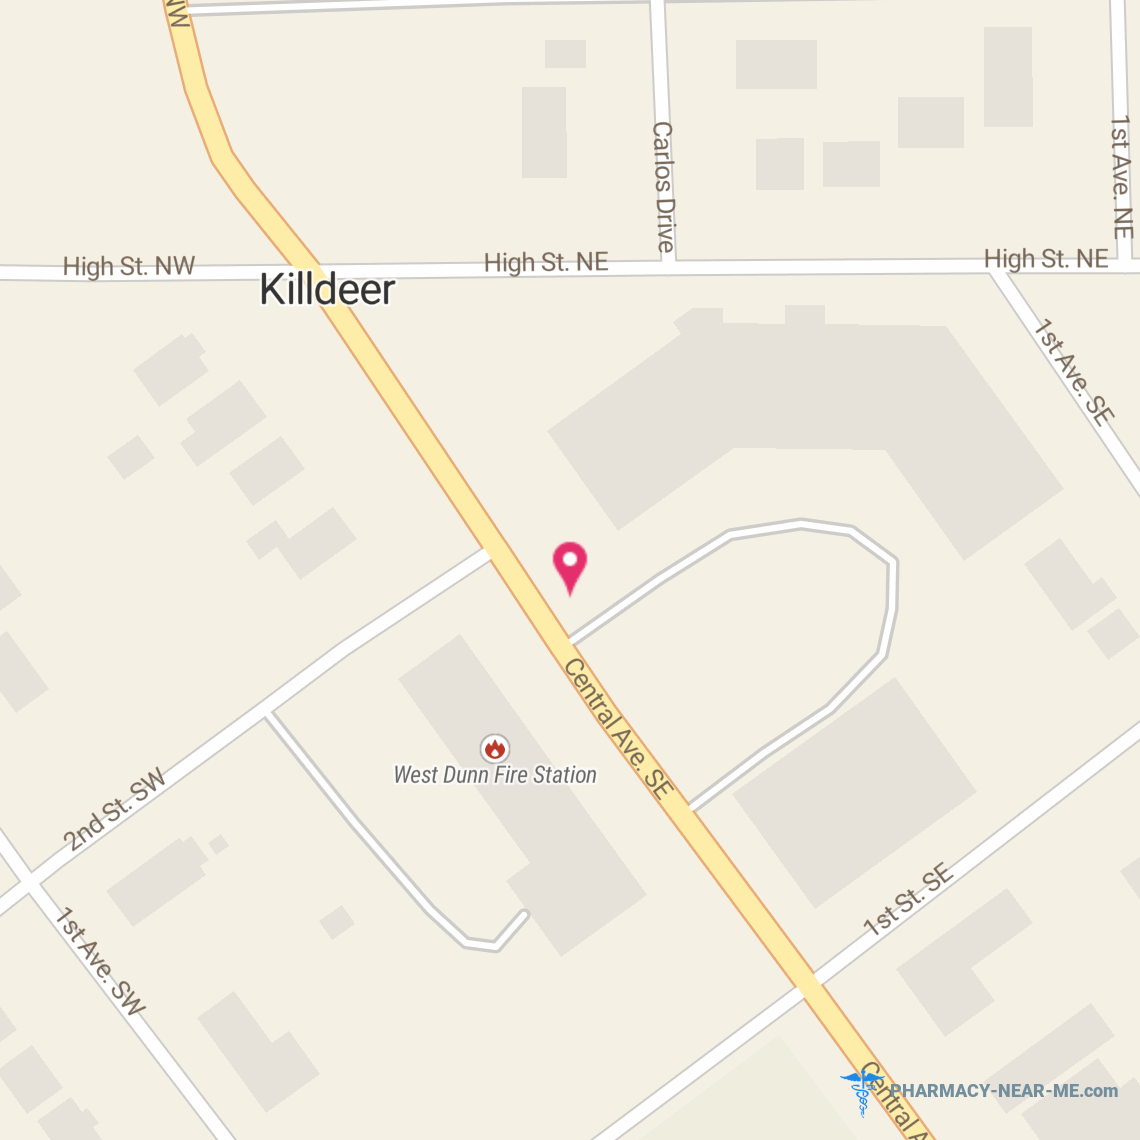 KILLDEER PHARMACY INC. - Pharmacy Hours, Phone, Reviews & Information: 14 Central Ave S, Killdeer, North Dakota 58640, United States